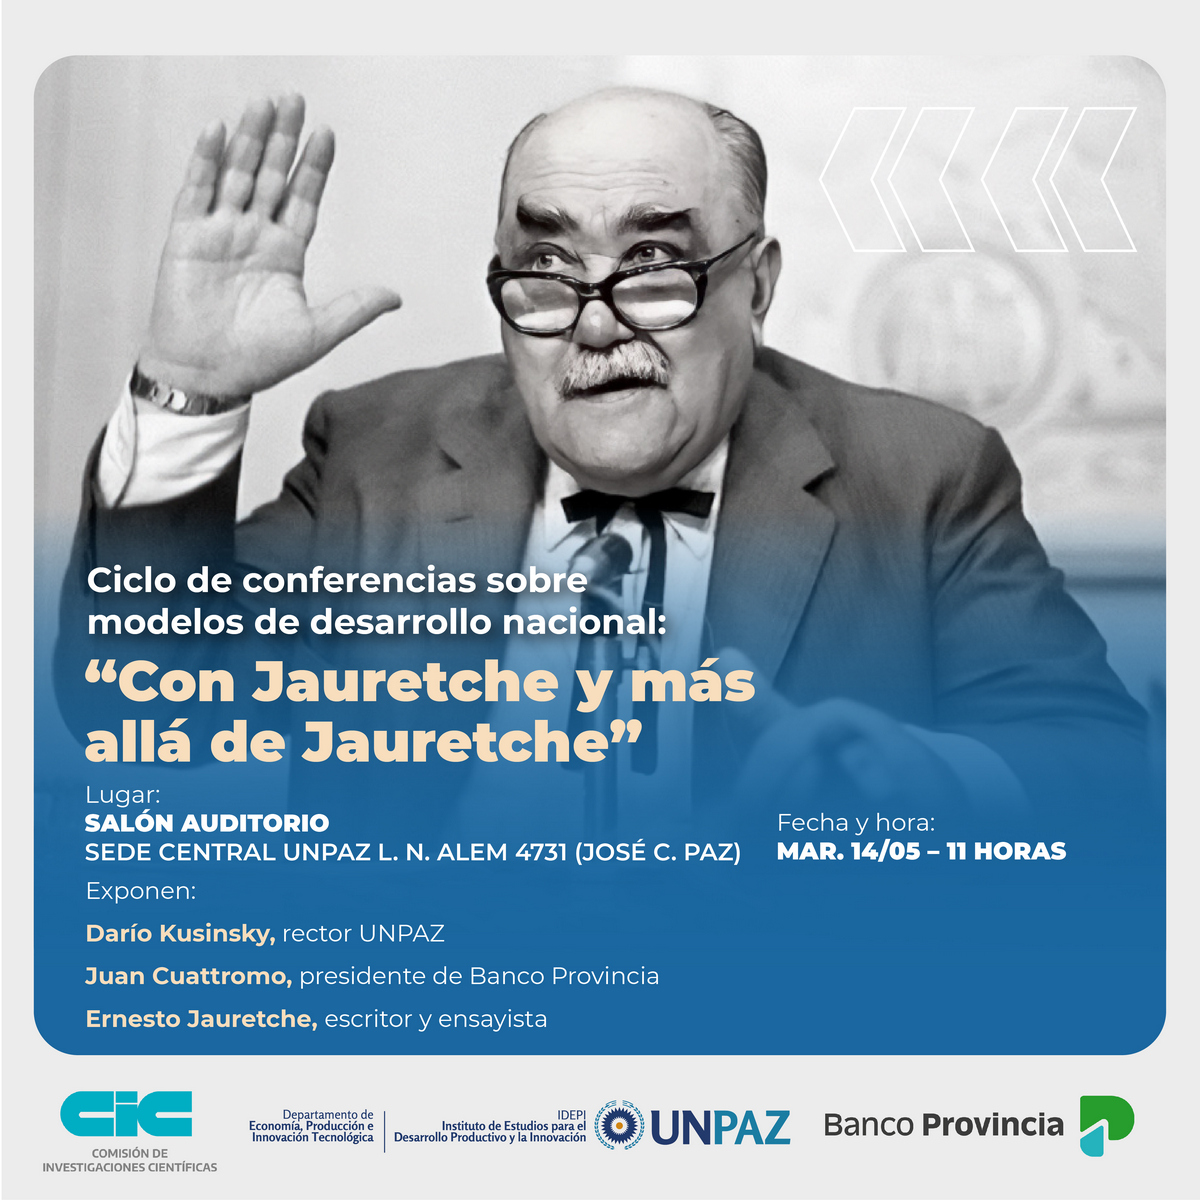 “Con Jauretche y más allá de Jauretche”, nuevo encuentro del ciclo de conferencias sobre modelos de desarrollo nacional